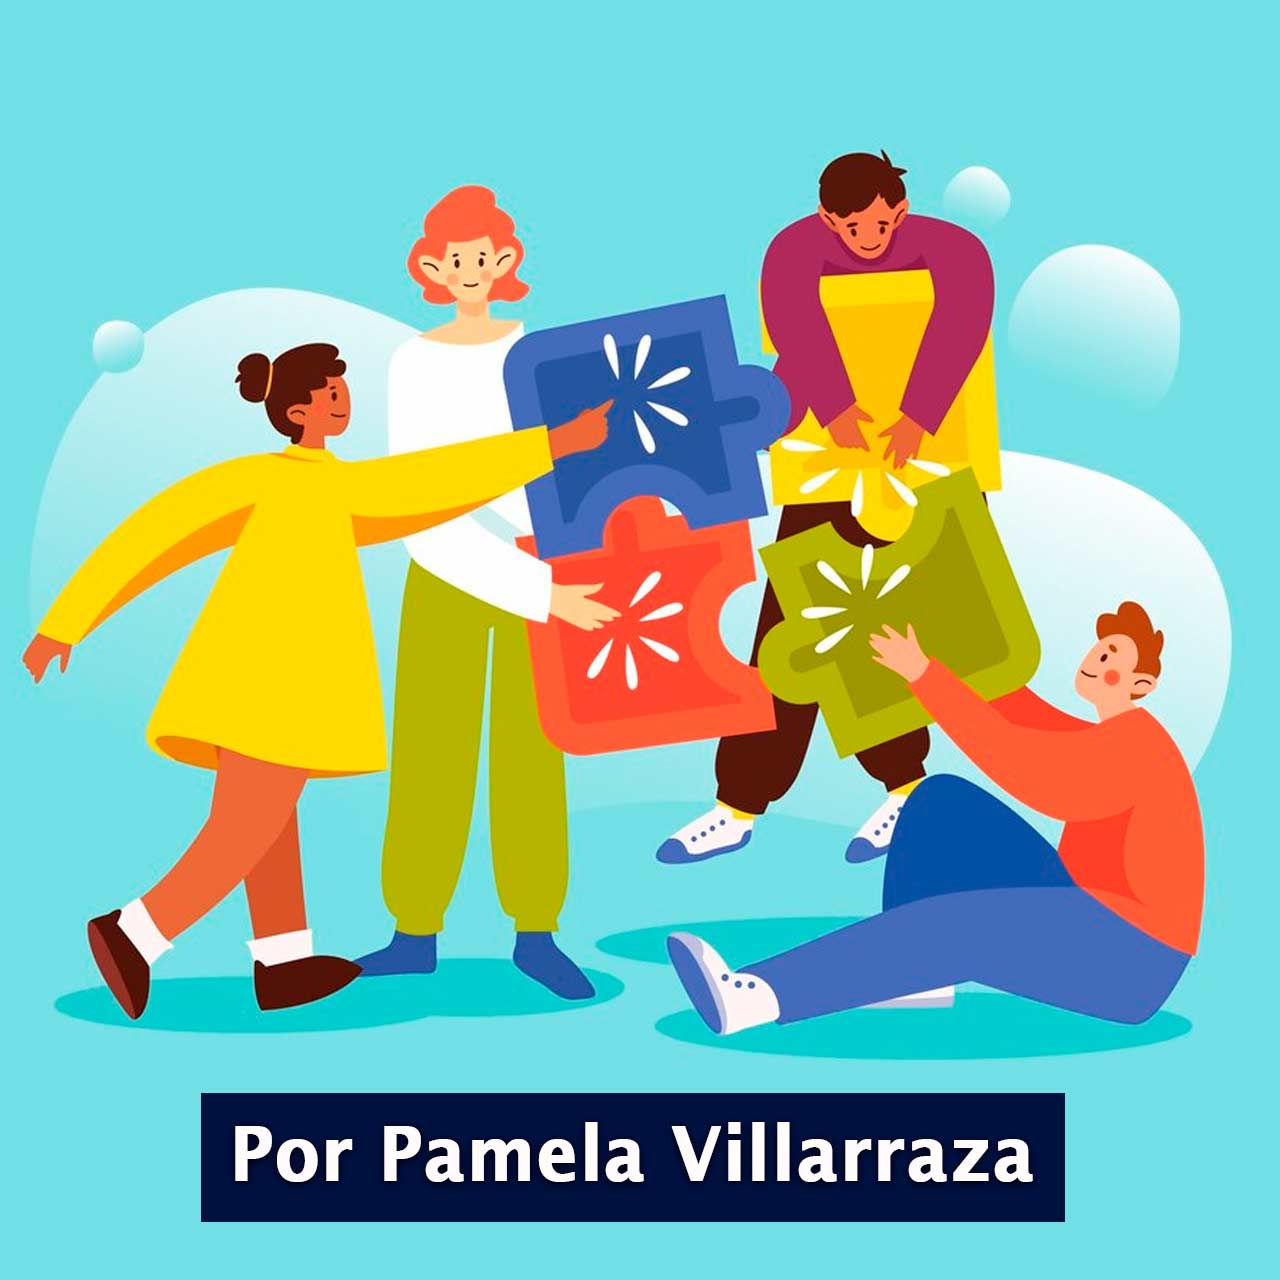 Una introducción al juego y al modo cooperativo de jugar por Pamela Villarraza